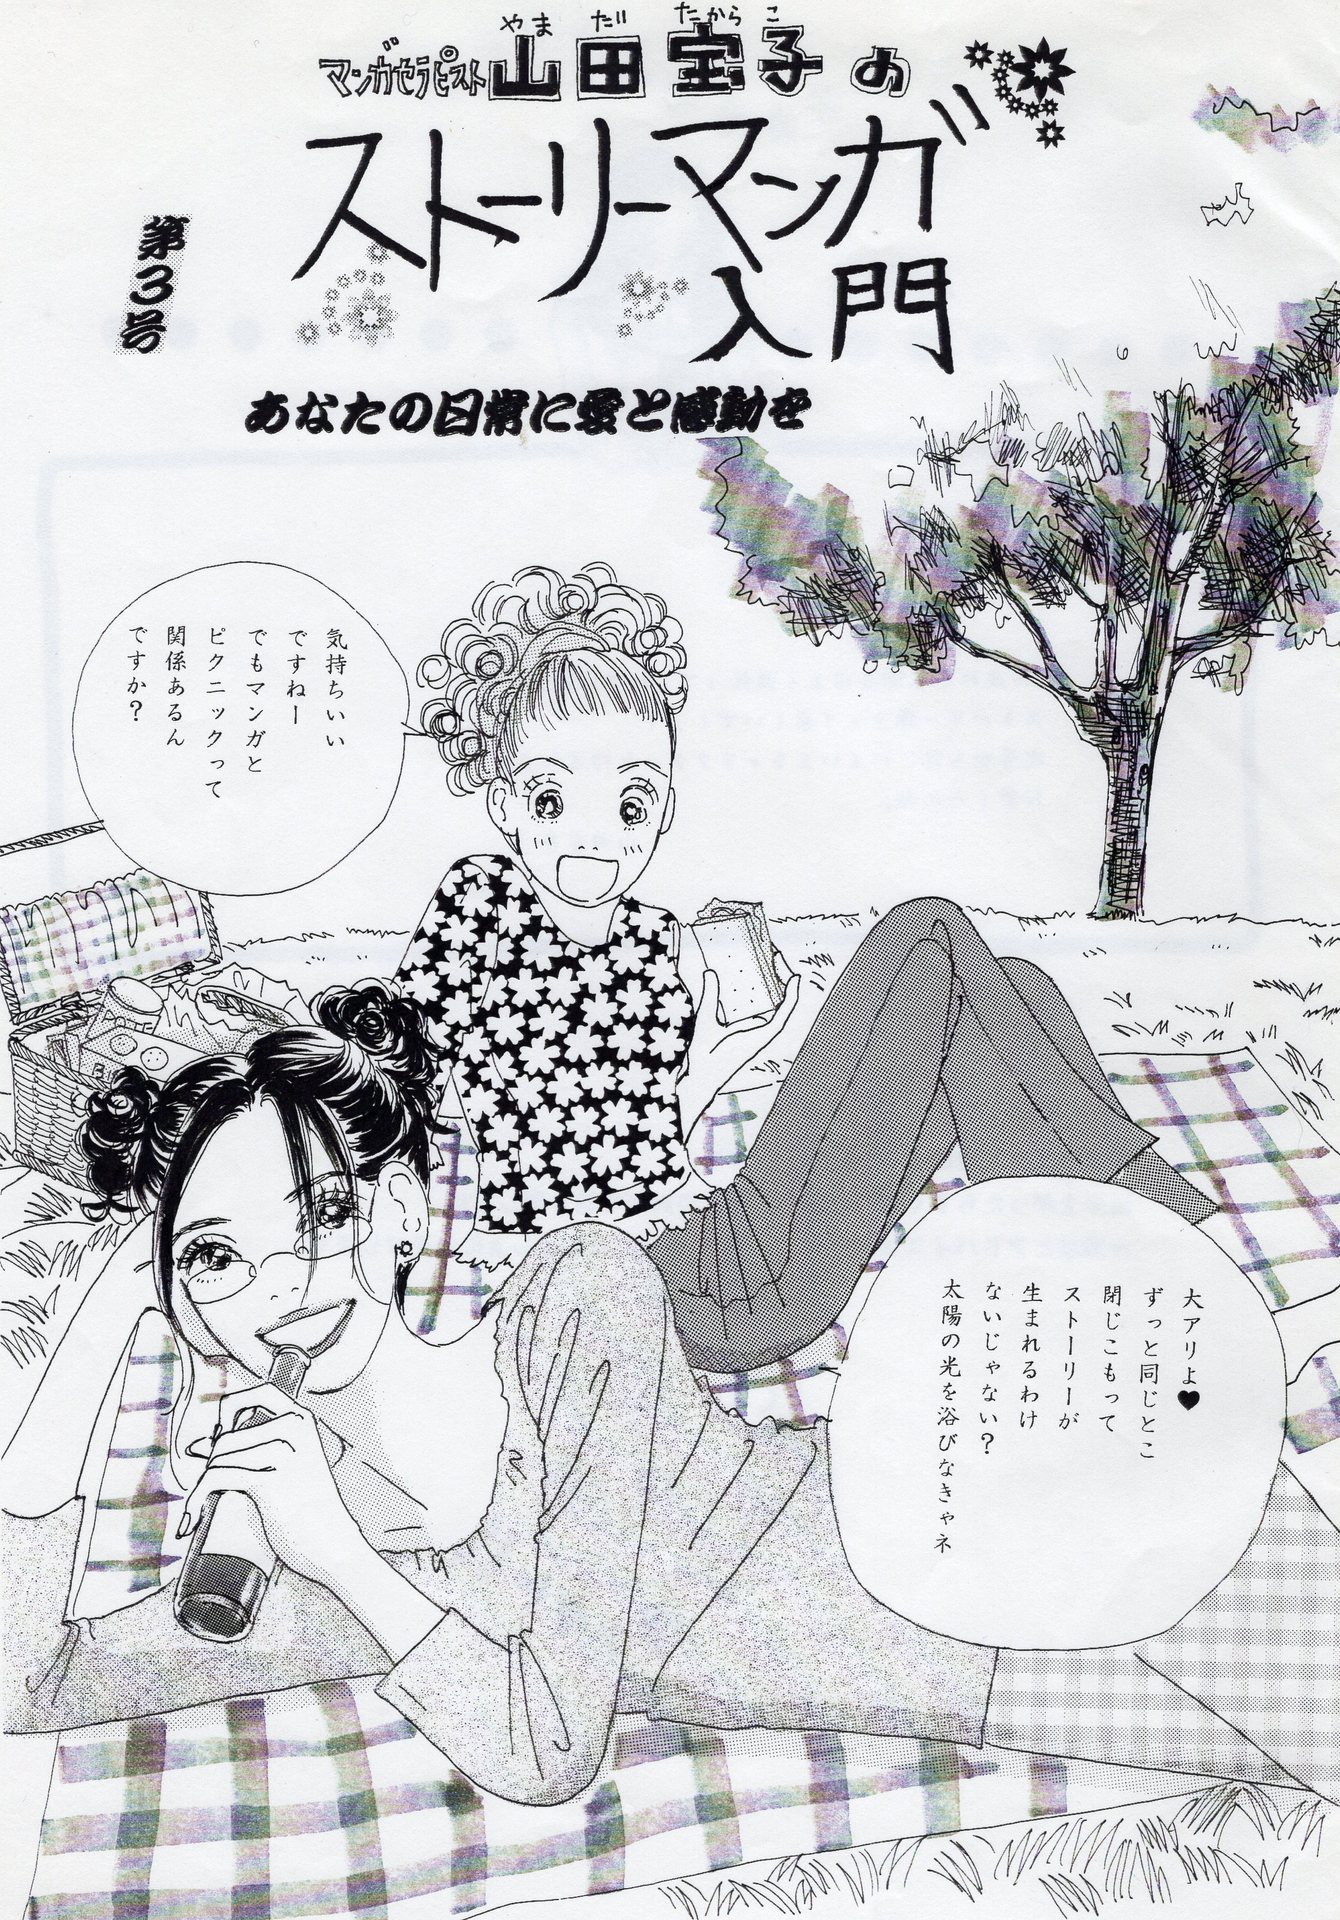 マンガの描き方 第三弾 ストーリー作りの練習に最適なのは A Life Is Manga 蒼乃シュウのマンガ道